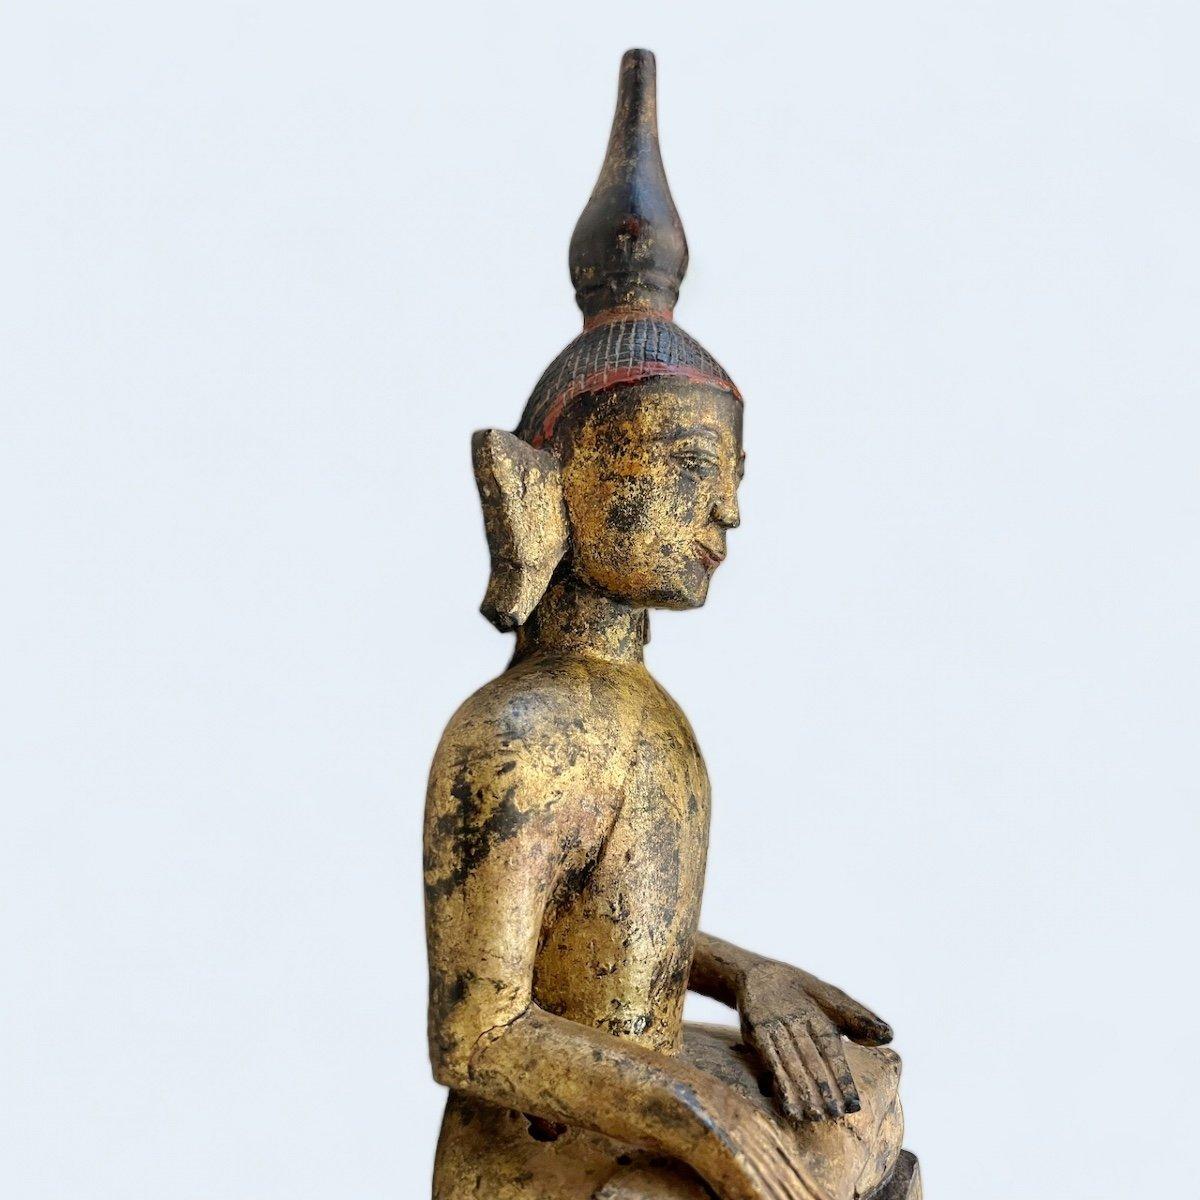 Wir präsentieren Ihnen diesen einzigartigen und wunderschönen sitzenden Buddha aus Laos, der aus dem frühen 19. Jahrhundert oder möglicherweise früher stammt. Es zeigt den wandernden Asketen und religiösen Lehrer in Meditation, gekleidet in